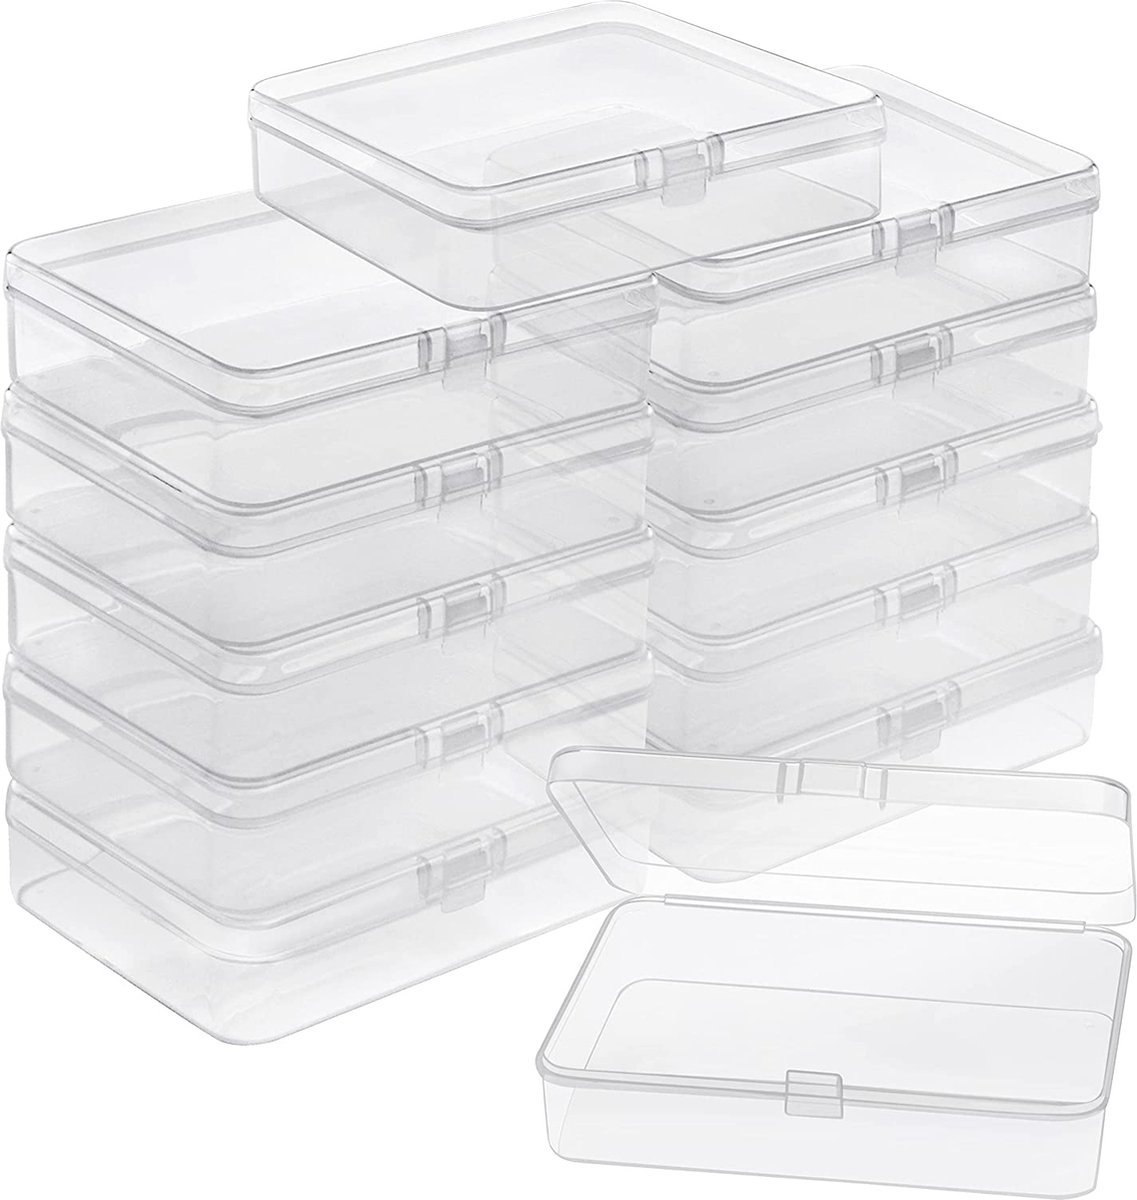 Klein Helder Plastic Opslag Dozen Containers met Scharnier Deksels (12 Pak) – L11,2 x B8,3 x H2,8cm – Mini Doosjes Voor Pillen, Kralen, Sieraden & Hobby Items